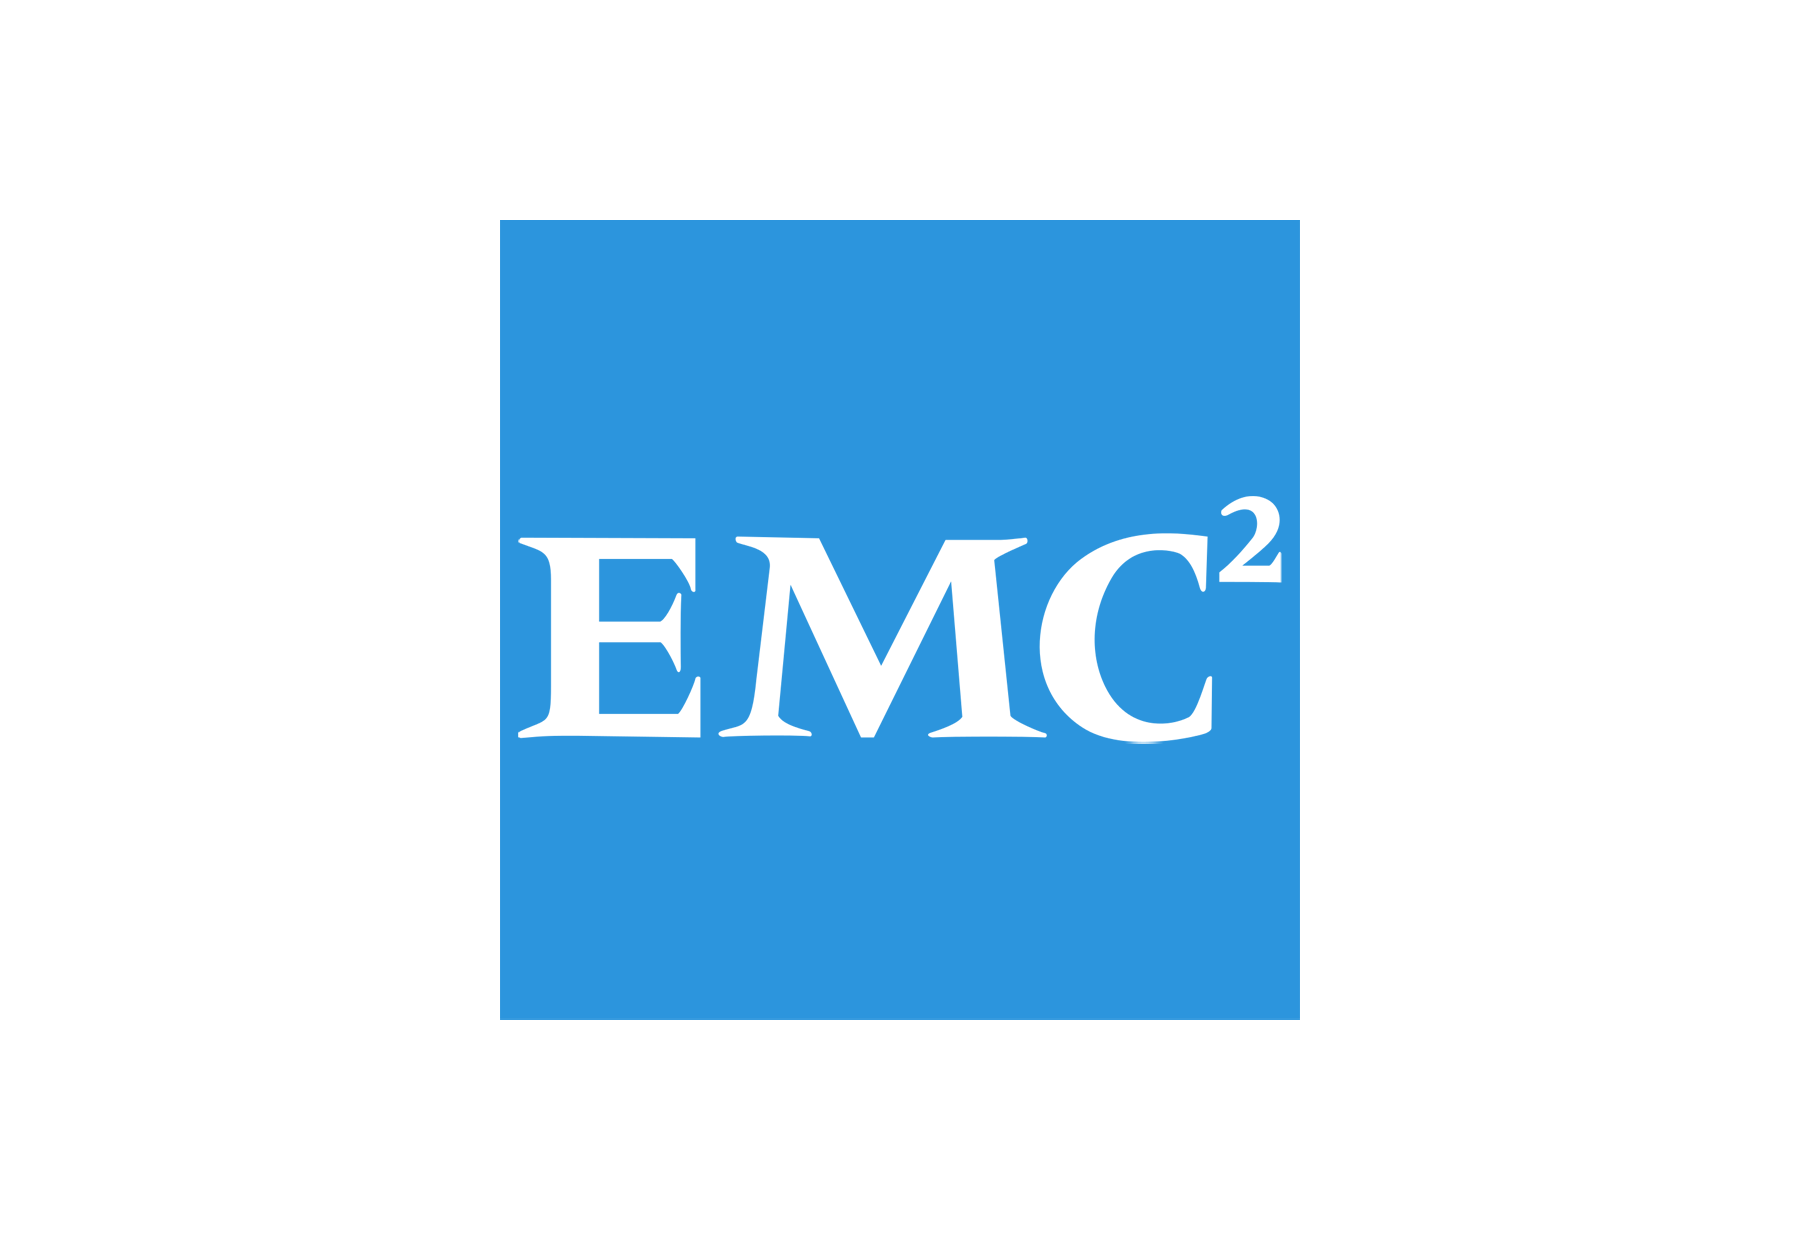 Documentum Logo - EMC Logo NYSE Software Logo Image - Free Logo Png